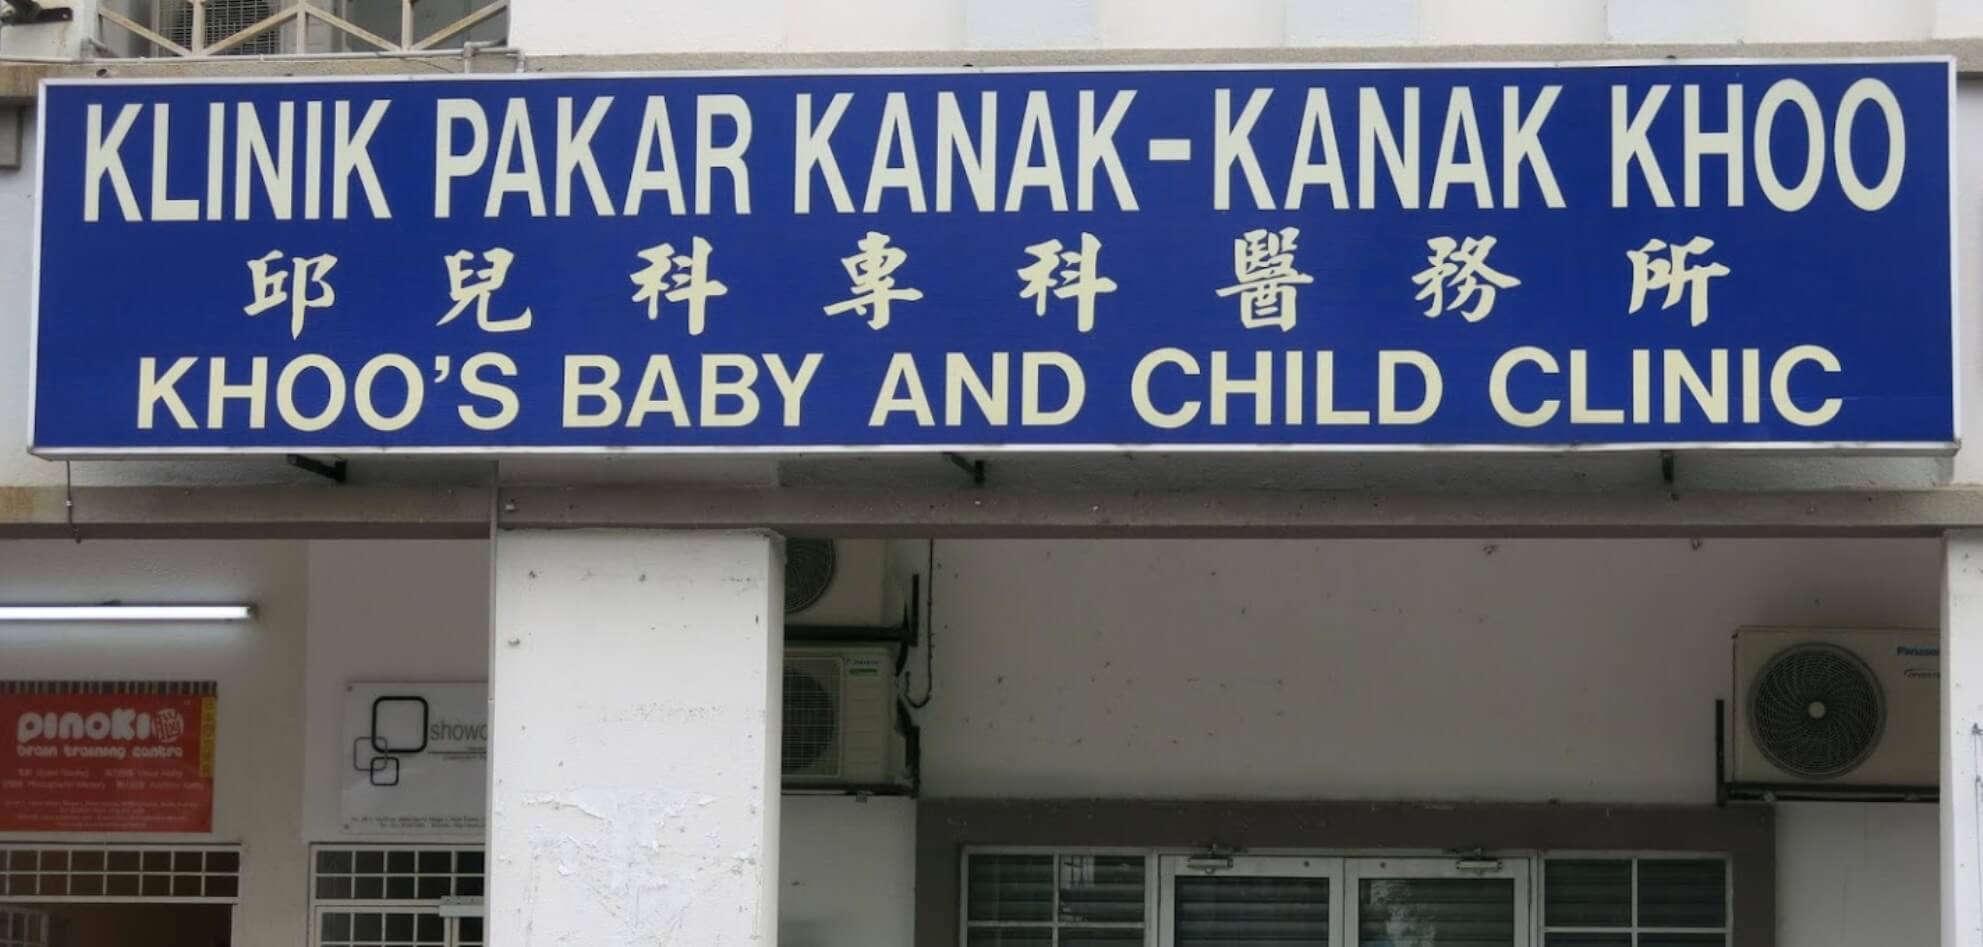 Klinik Pakar Kanak Kanak Khoo, KL